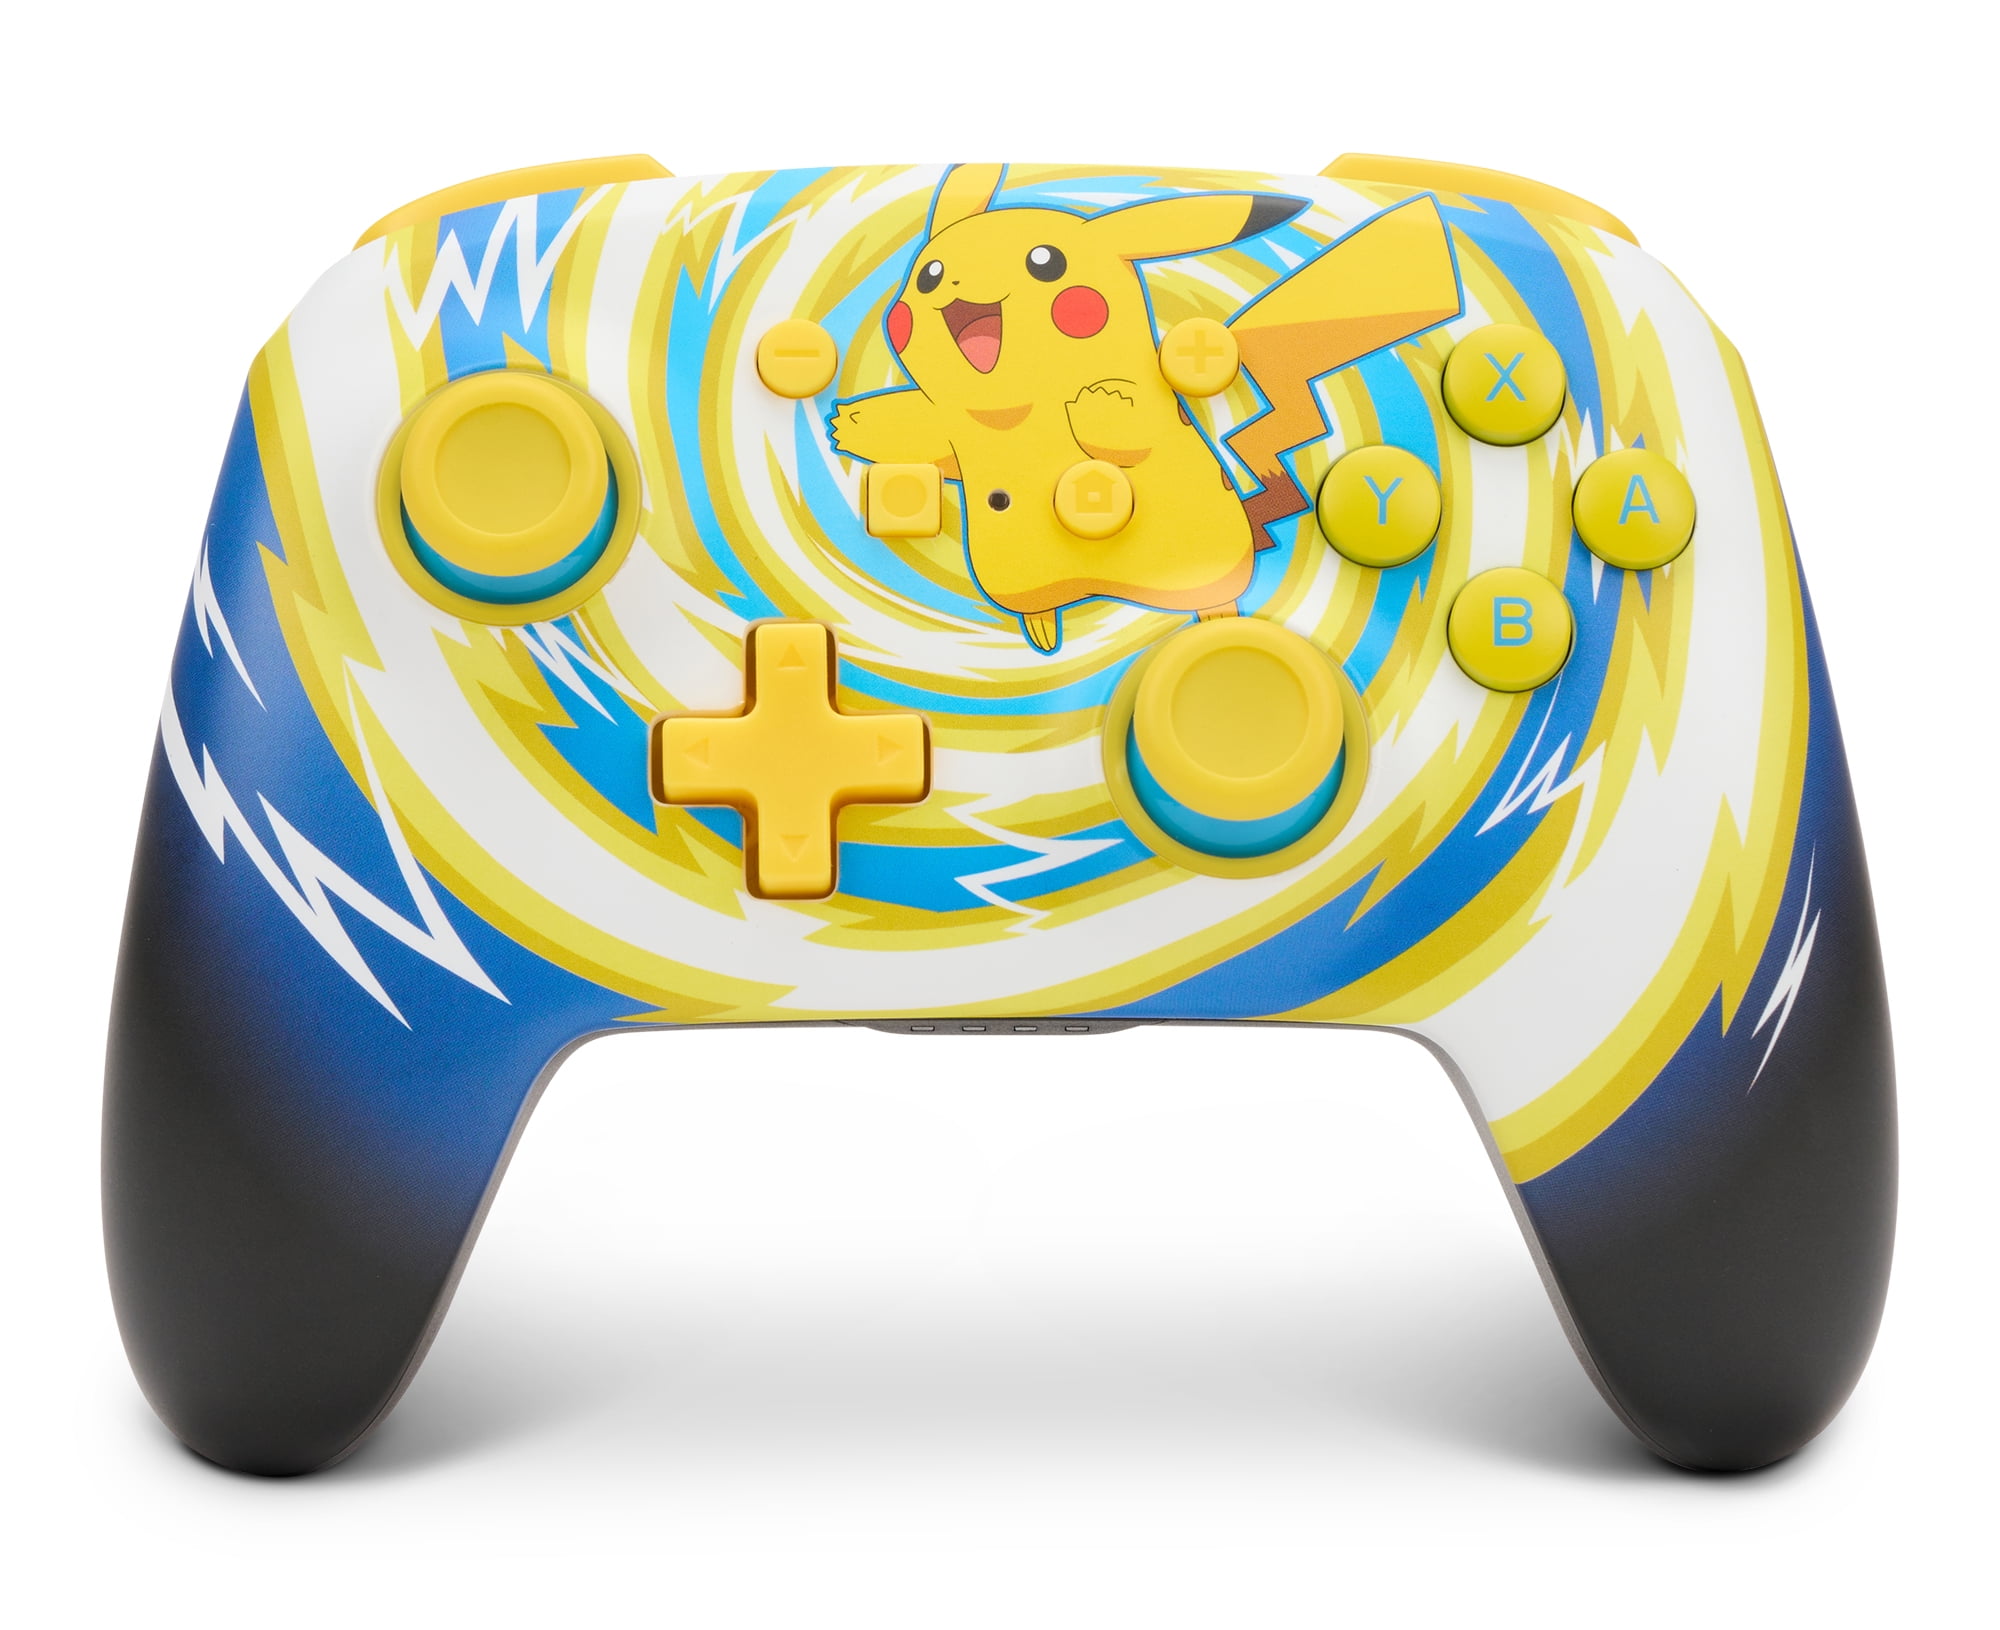 PowerA Enhanced Wireless Controller for Nintendo Switch - Pokémon: Pikachu  Vortex 